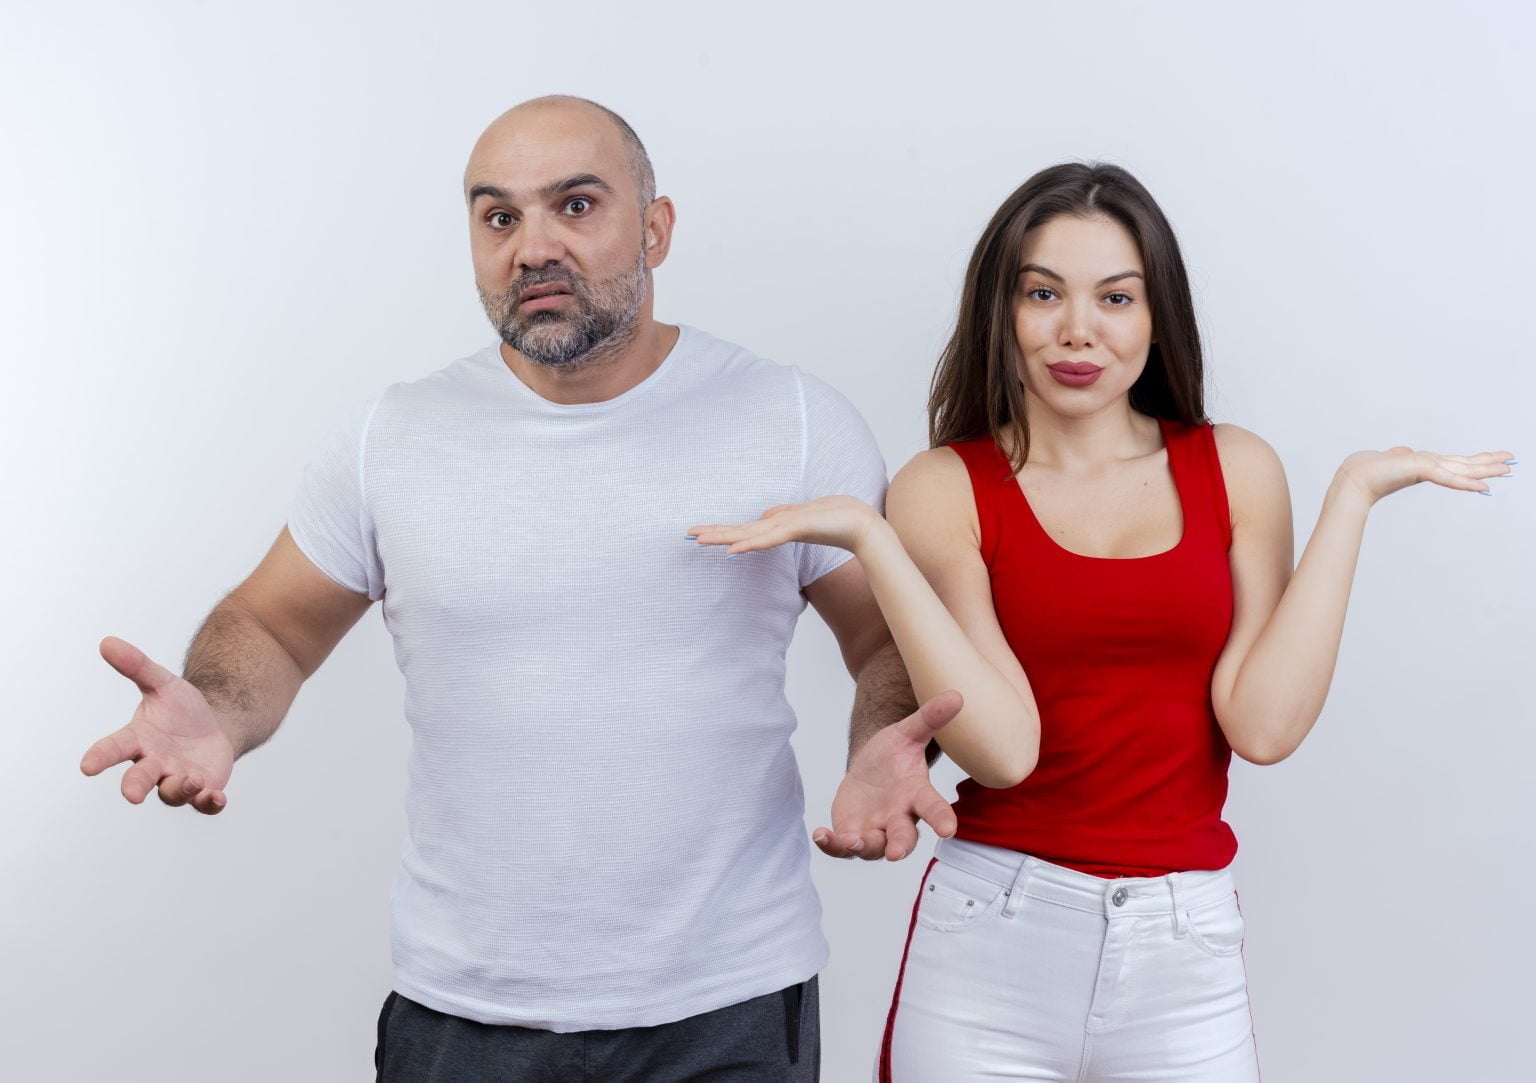 Hombres o mujeres: ¿Quién pierde peso más rápido?